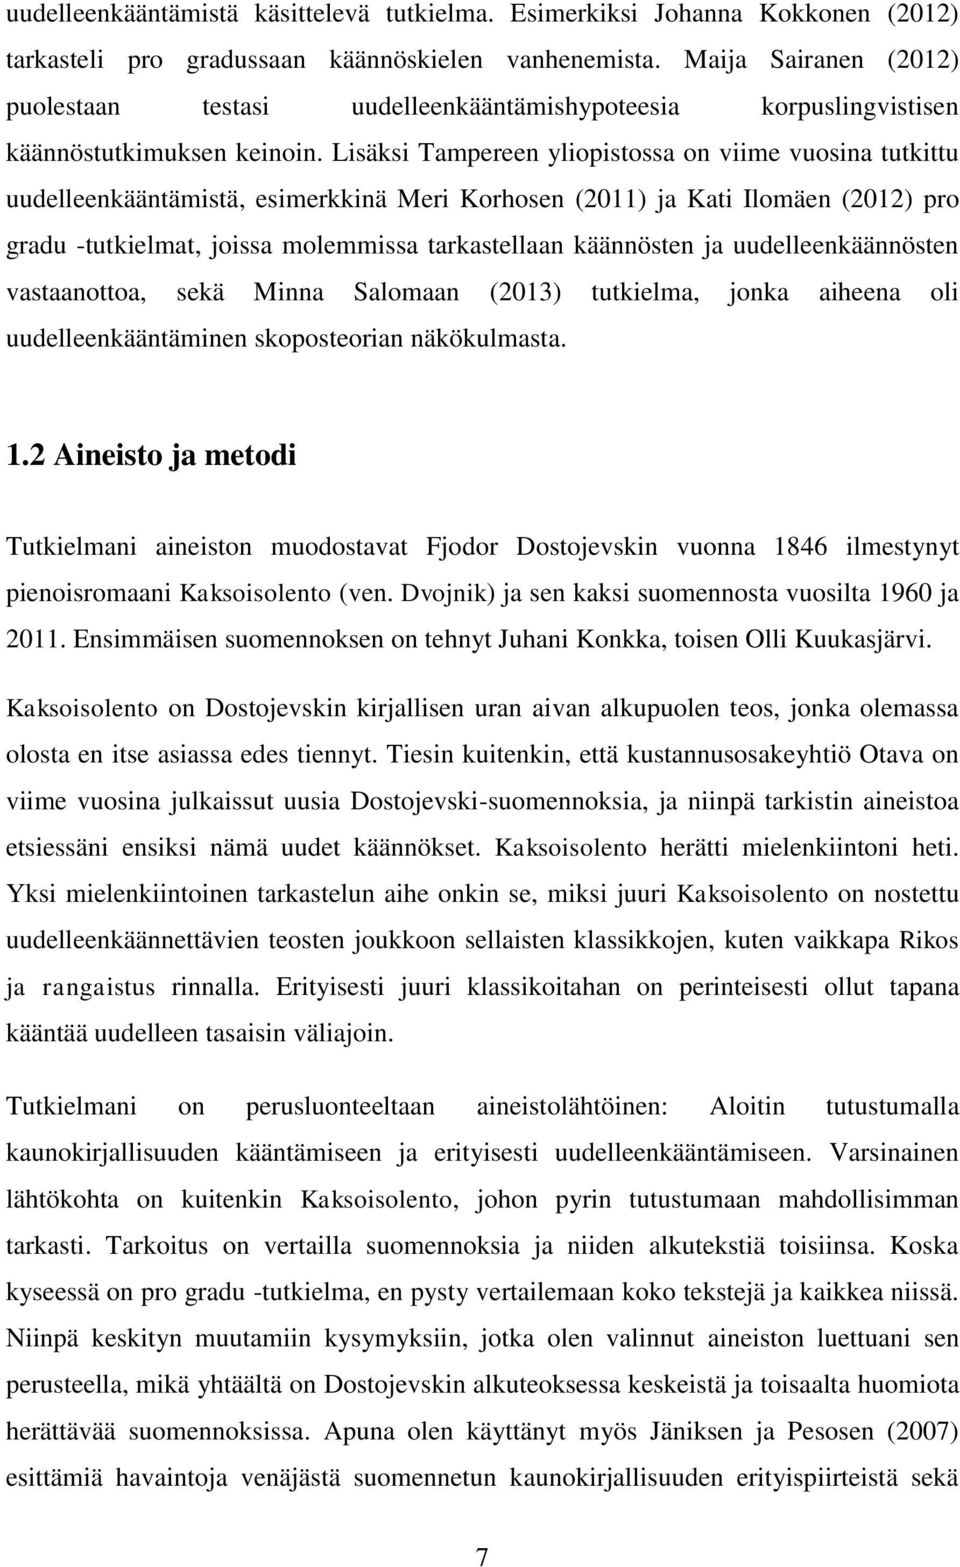 Lisäksi Tampereen yliopistossa on viime vuosina tutkittu uudelleenkääntämistä, esimerkkinä Meri Korhosen (2011) ja Kati Ilomäen (2012) pro gradu -tutkielmat, joissa molemmissa tarkastellaan